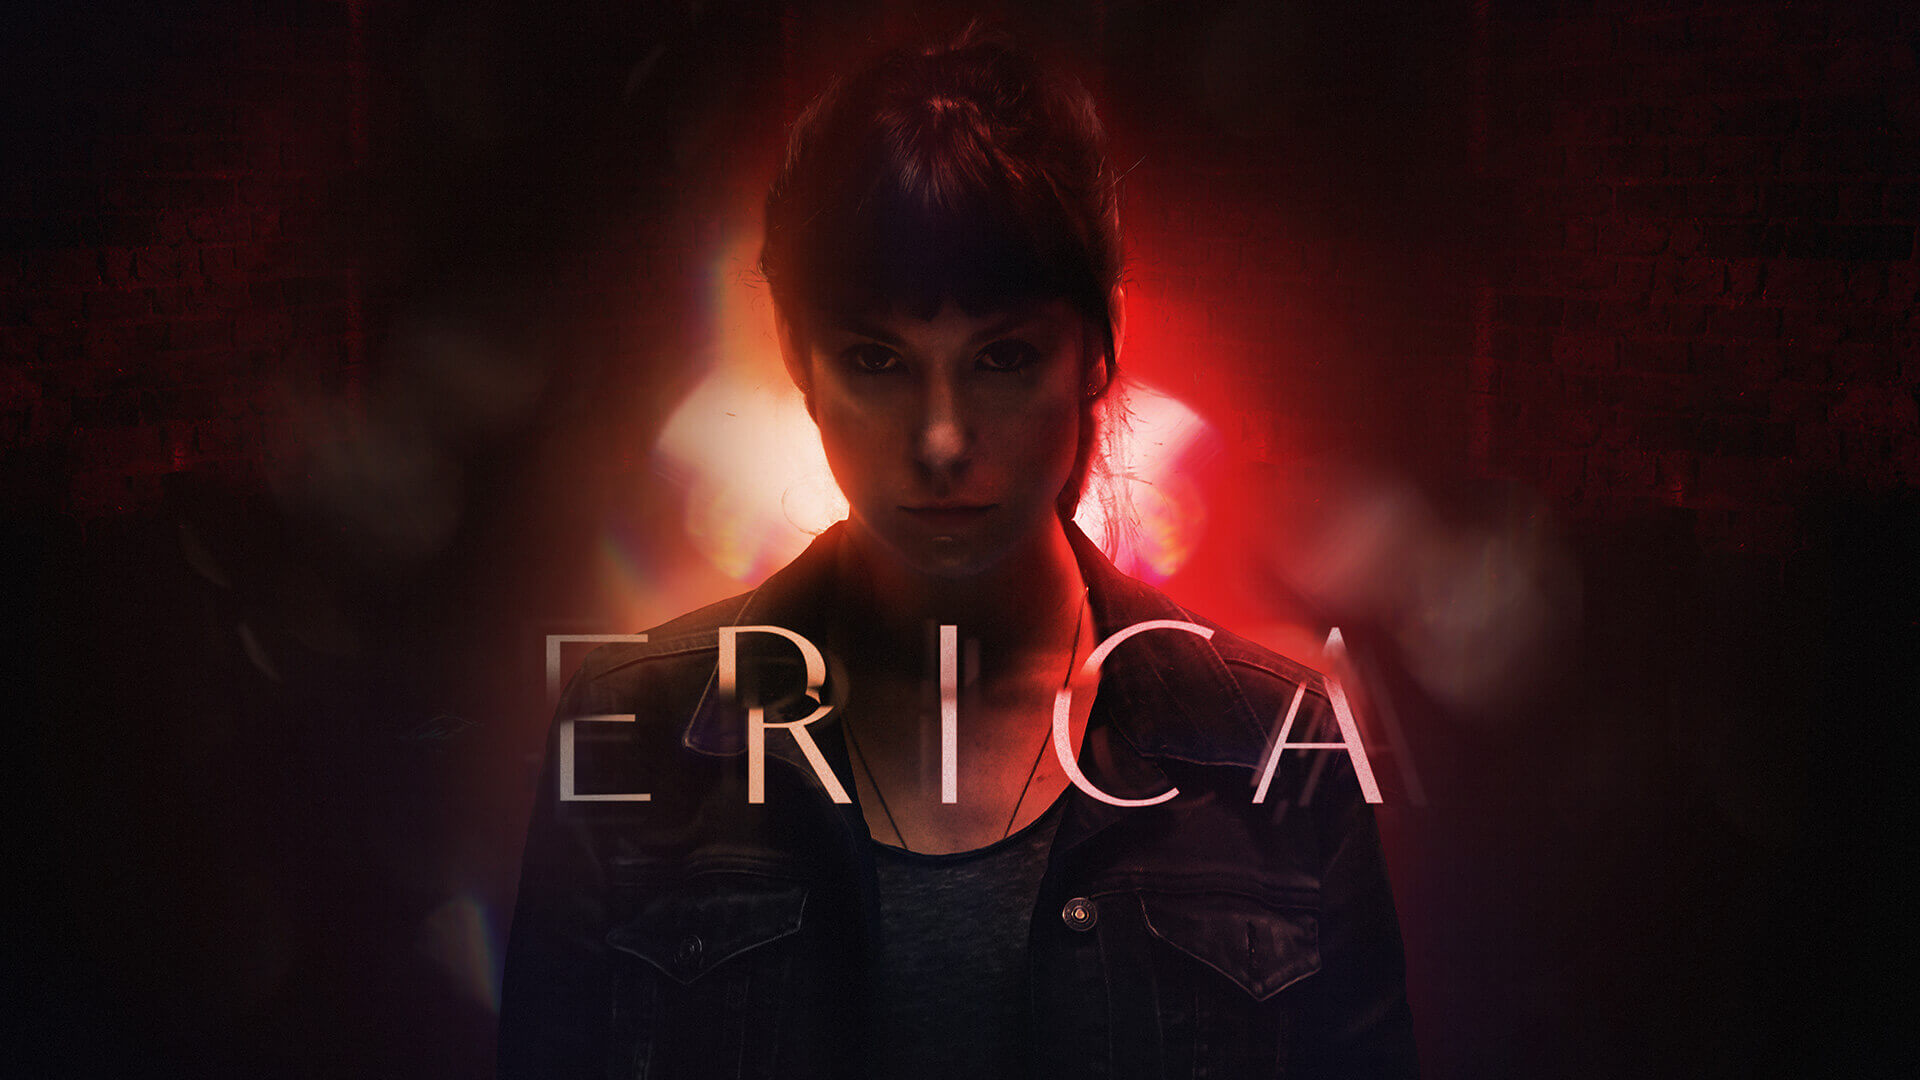 Erica type